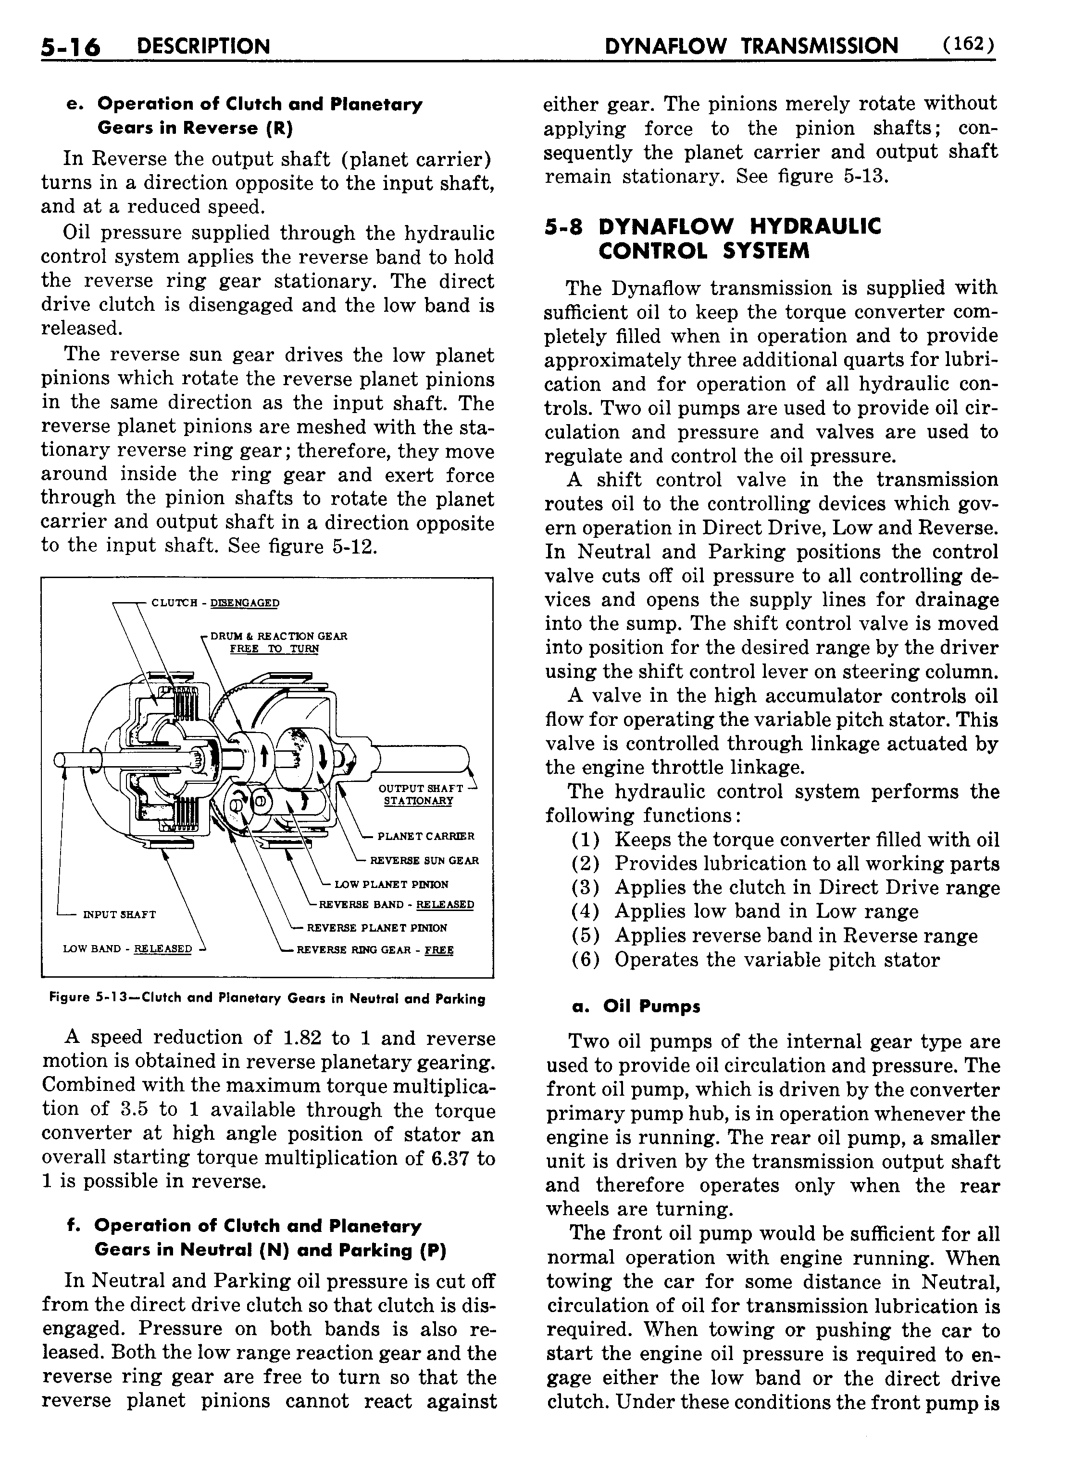 n_06 1956 Buick Shop Manual - Dynaflow-016-016.jpg